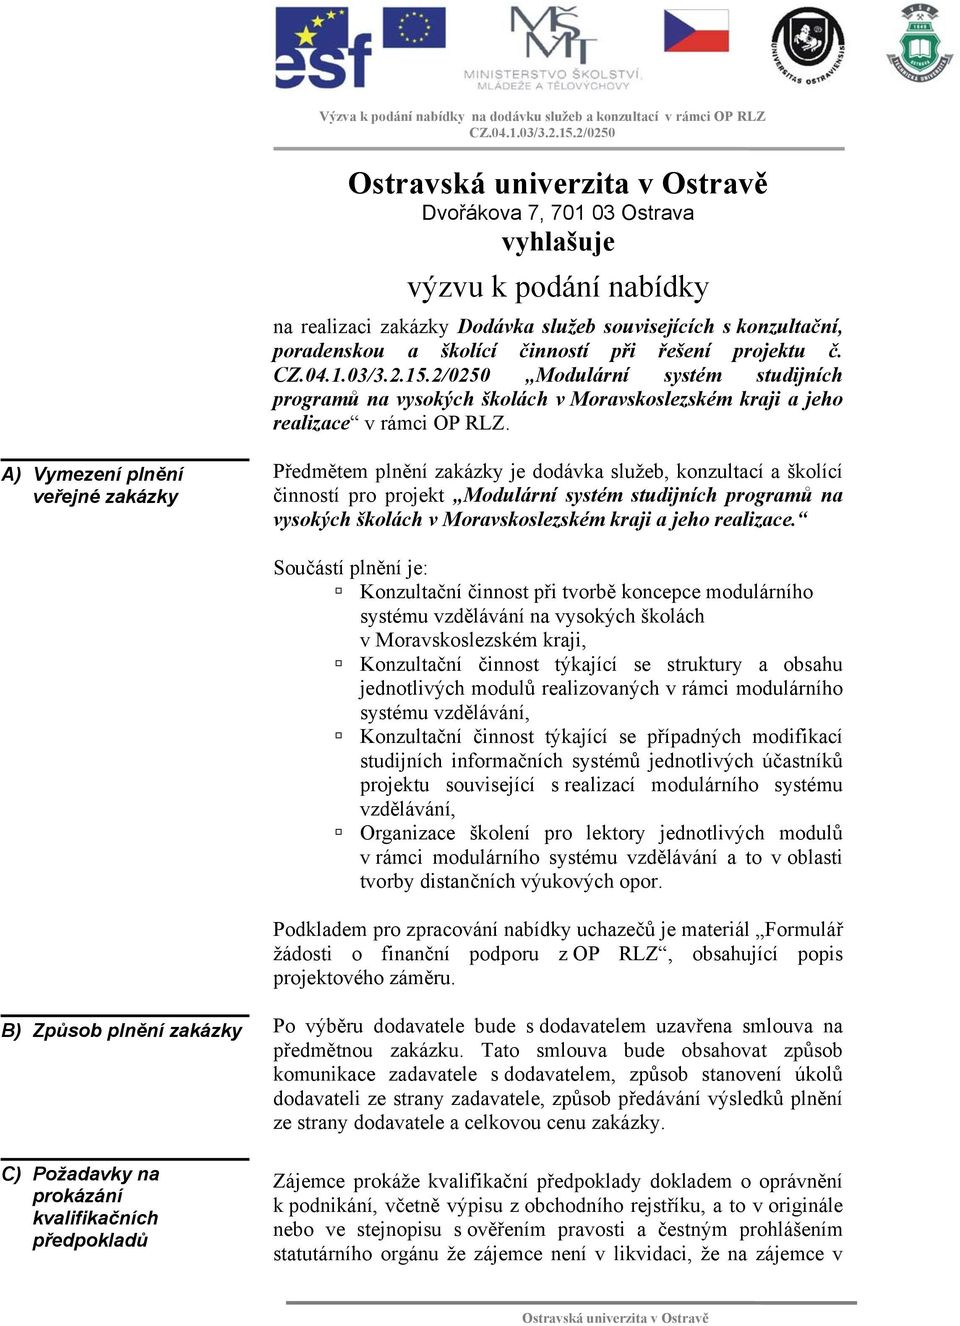 A) Vymezení plnění veřejné zakázky Předmětem plnění zakázky je dodávka služeb, konzultací a školící činností pro projekt Modulární systém studijních programů na vysokých školách v Moravskoslezském